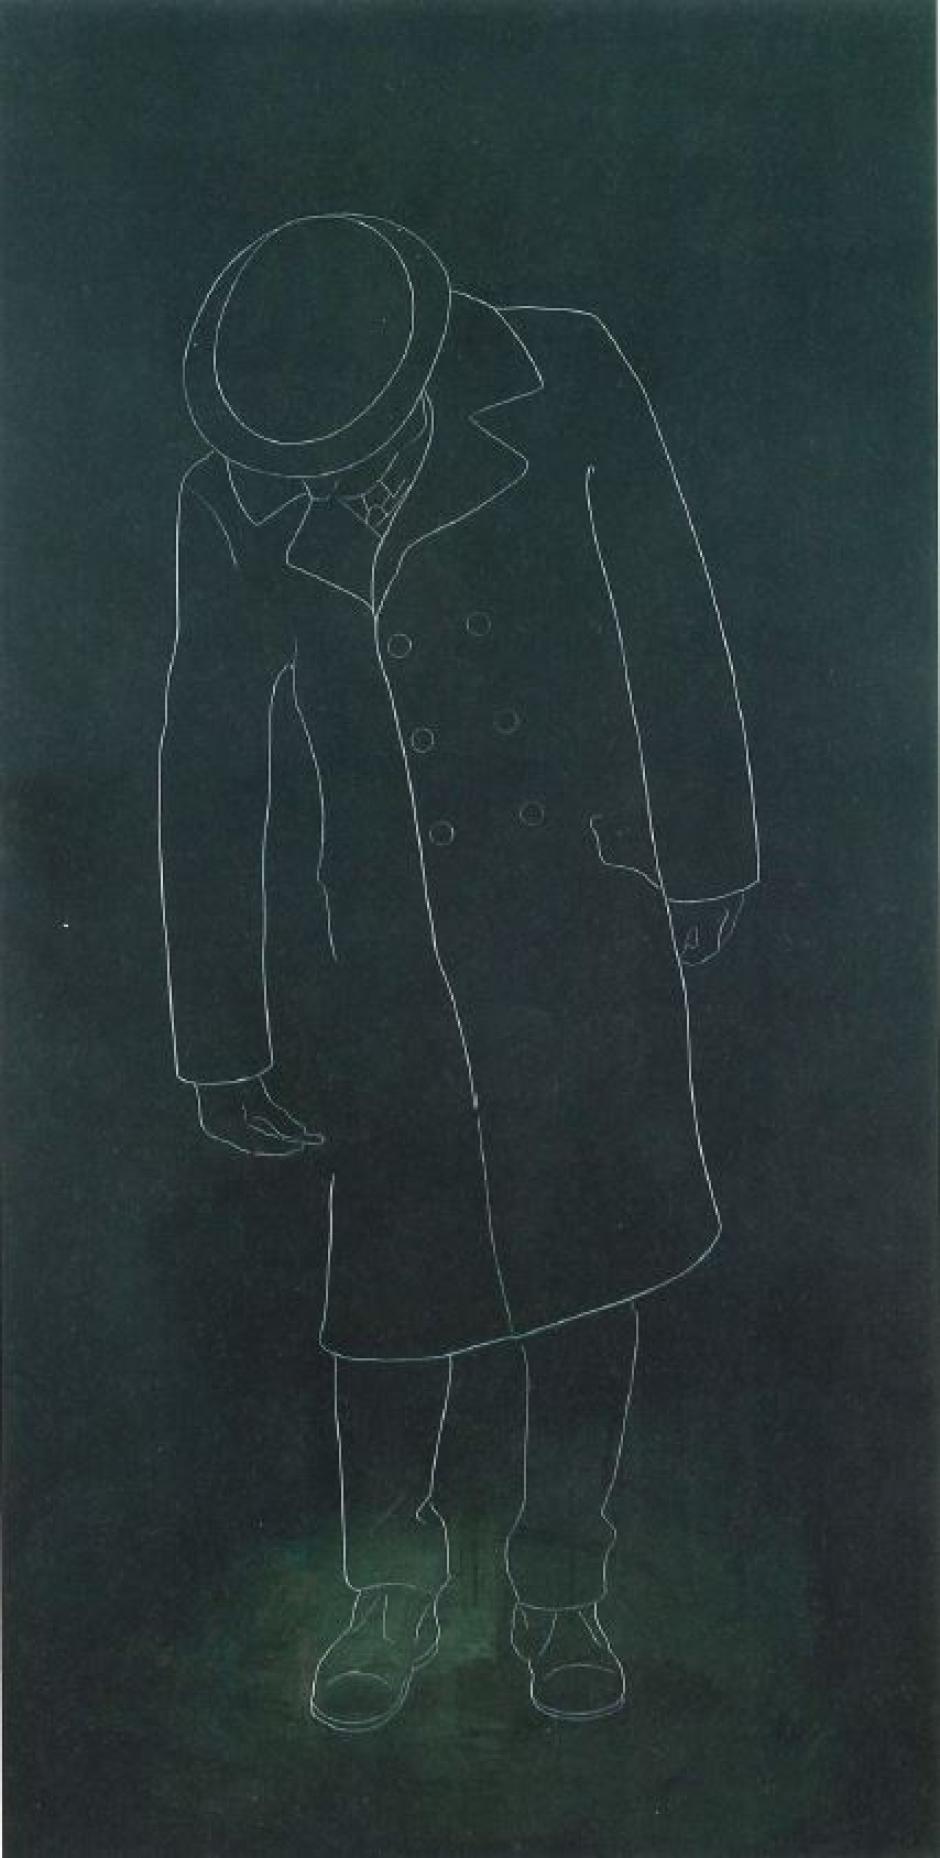 La obra 'El hombre dibujado', que da título a la serie y a la exposición, de Ximo Amigó